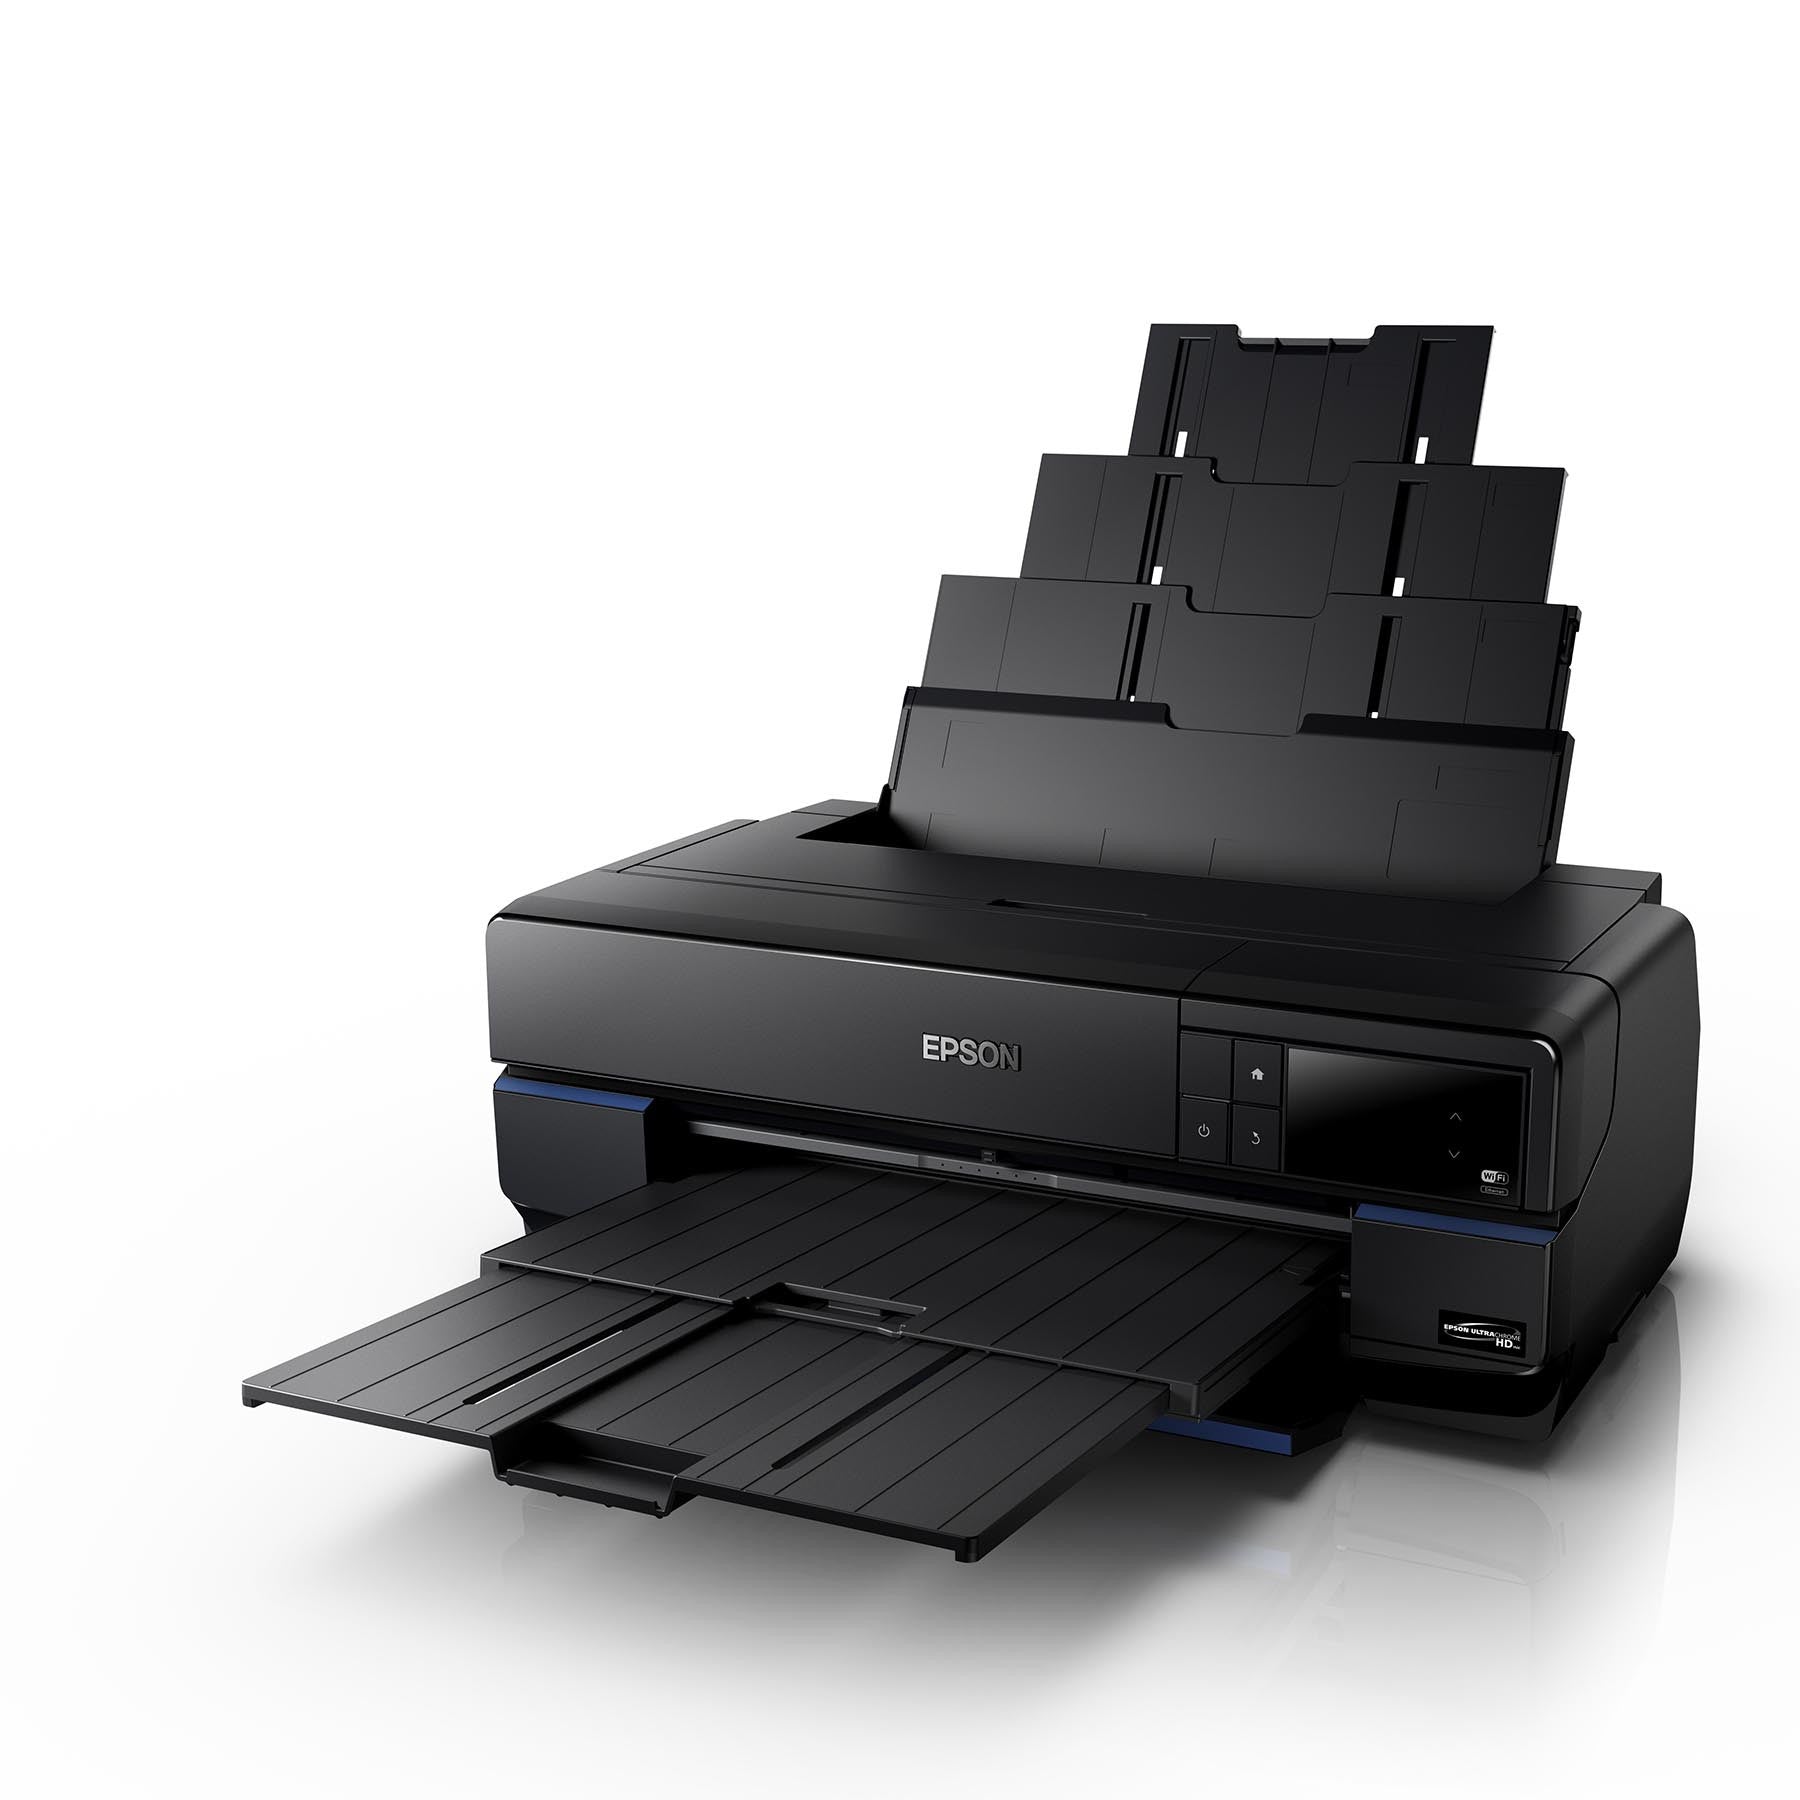 Epson Surecolor P800 Printer, printers large format, Epson - Pictureline  - 1